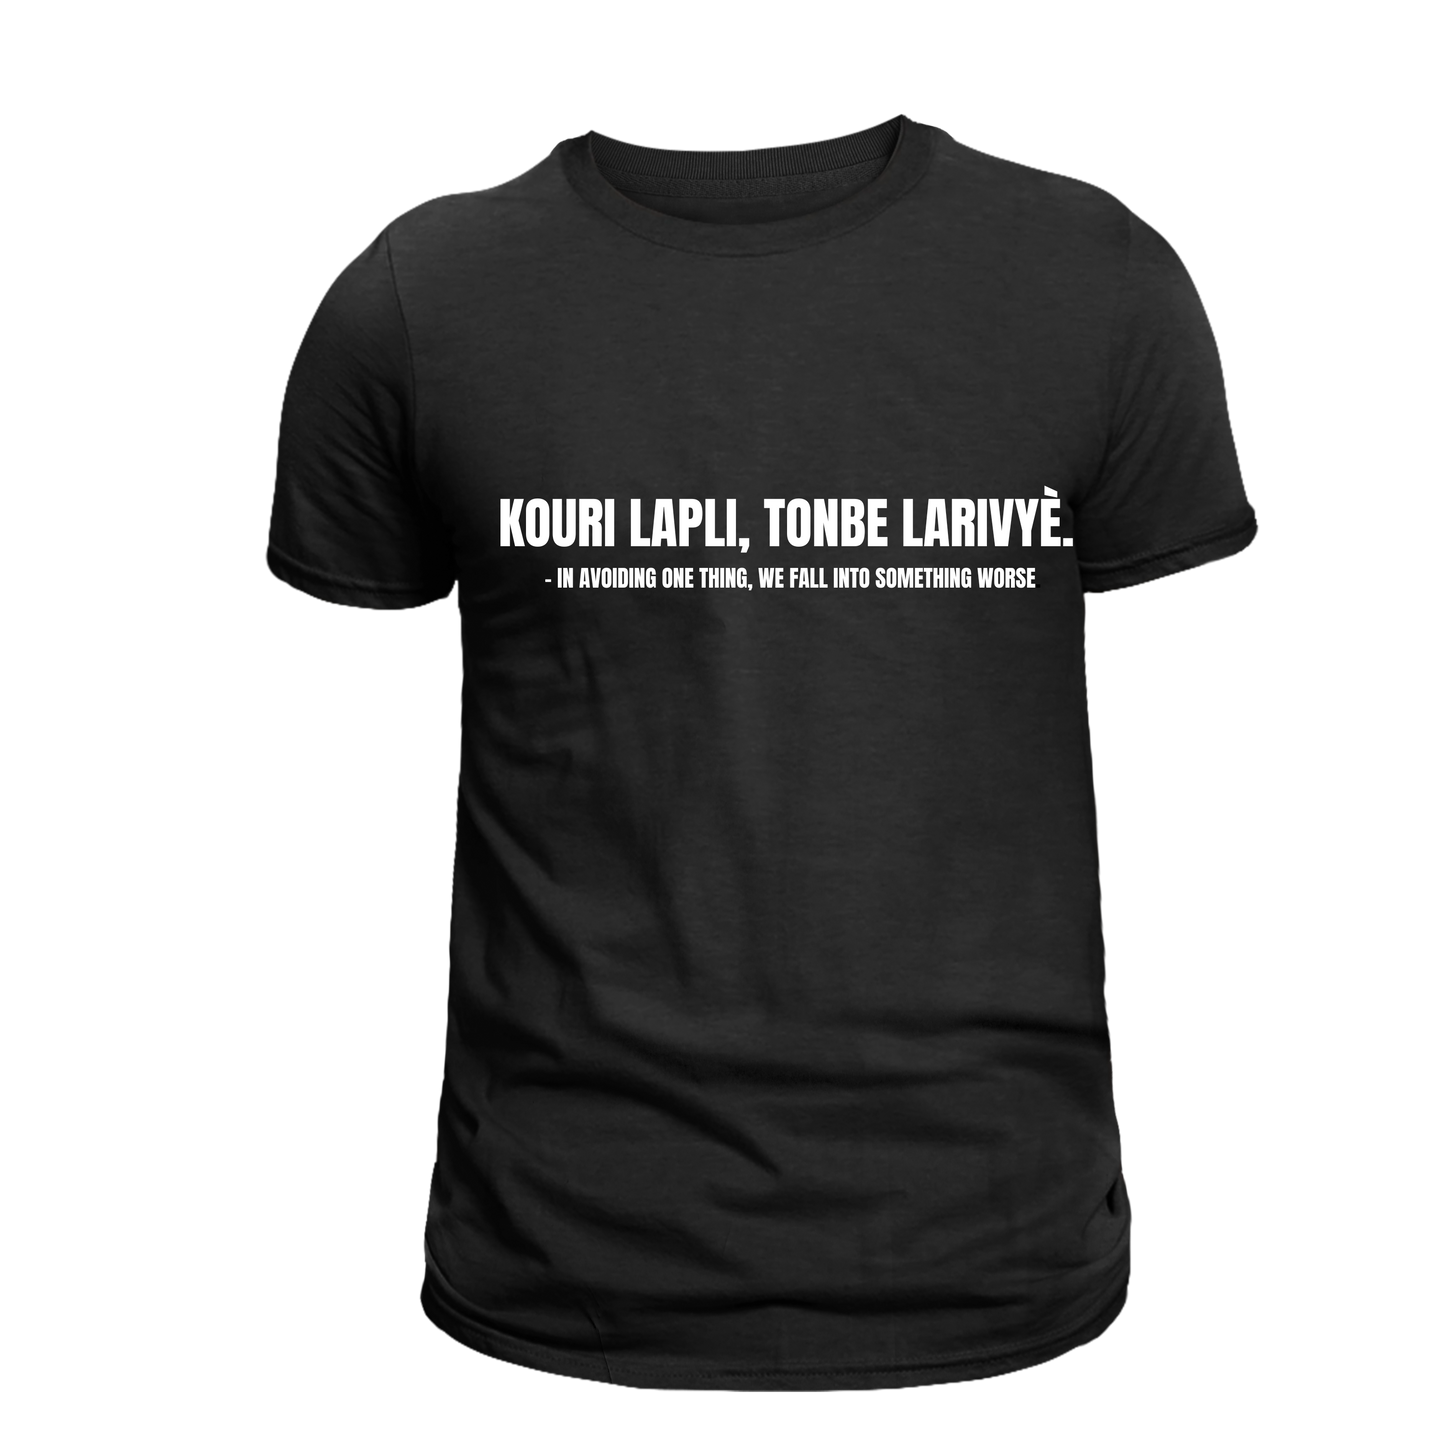 KOURI LAPLI, TONBE LARIVYÈ. – IN AVOIDING ONE THING, WE FALL INTO SOMETHING WORSE.